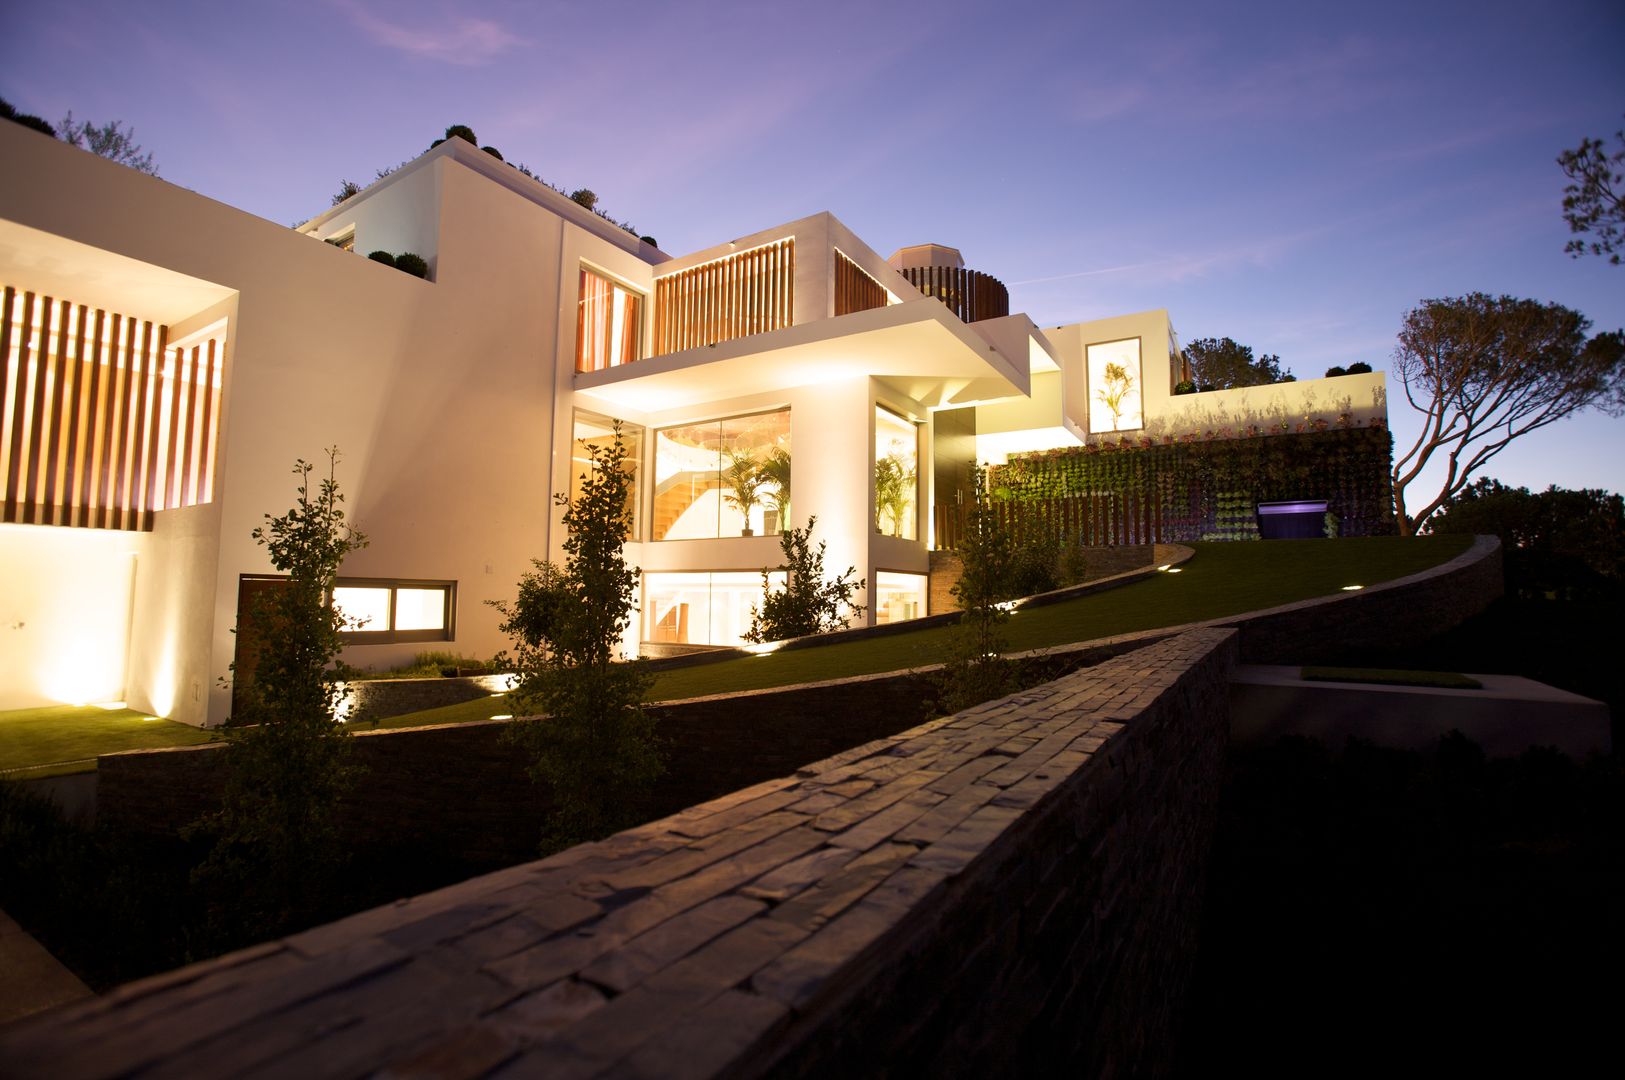 Casa Feng Shui * Quinta do Lago - Algarve, LC Vertical Gardens LC Vertical Gardens Garden Plants & flowers